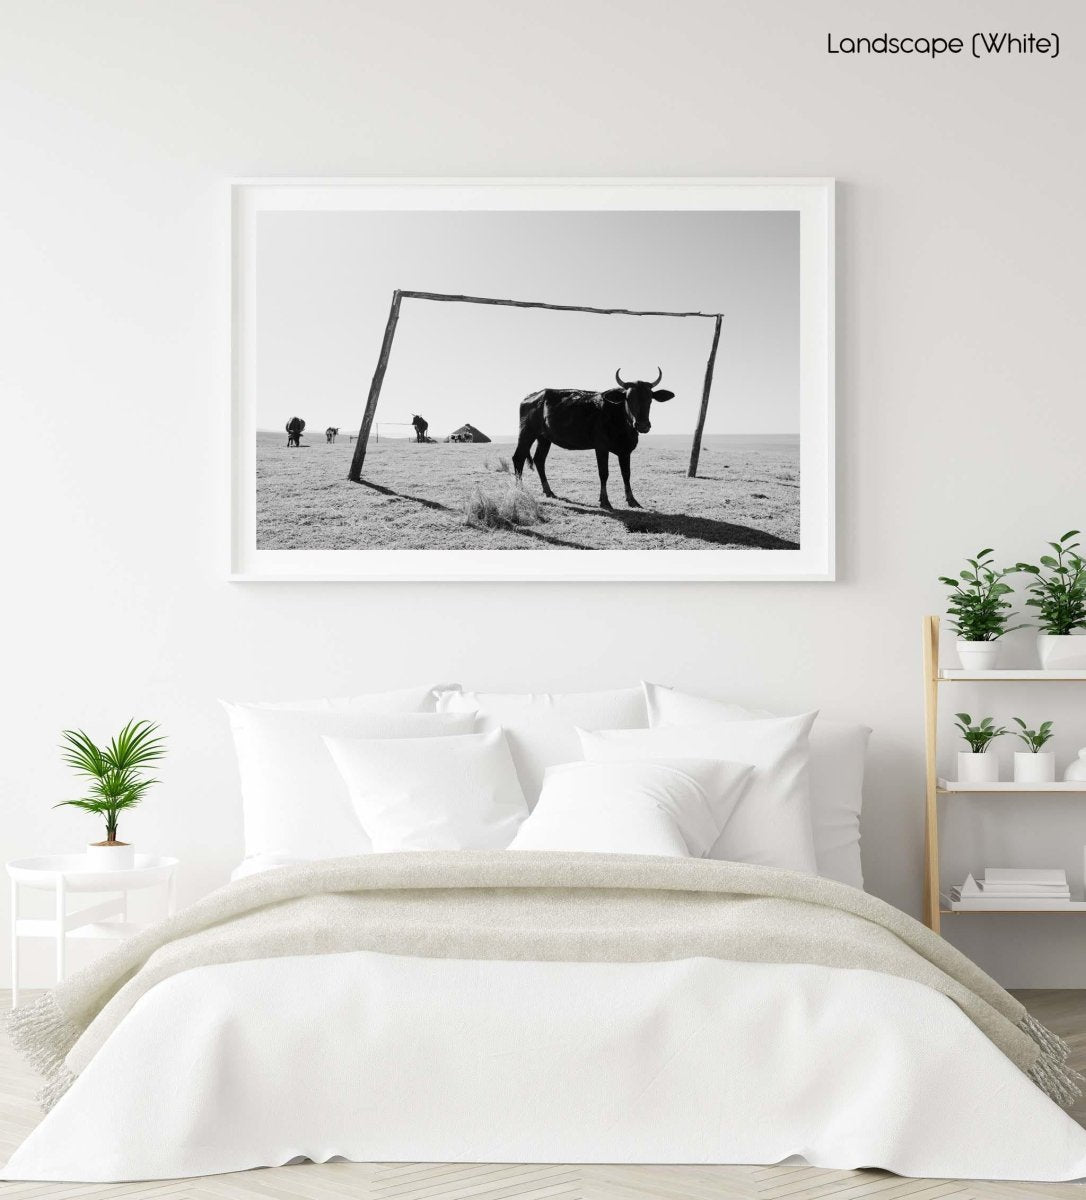 Transkei bull standing between soccer goal in black and white